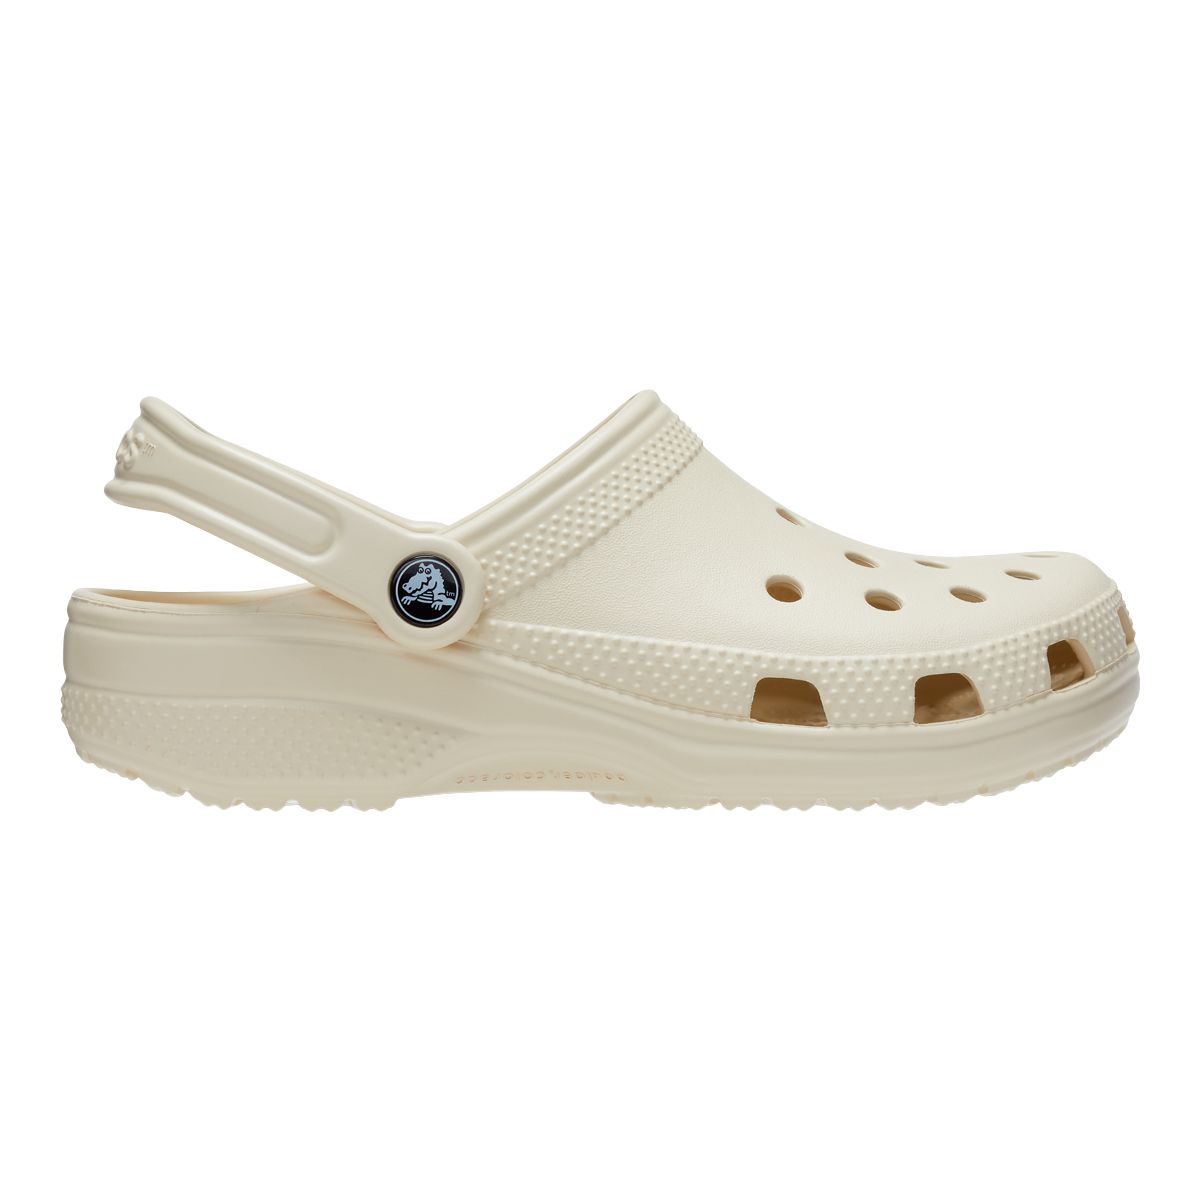 Crocs Women's Classic Clog Sandals